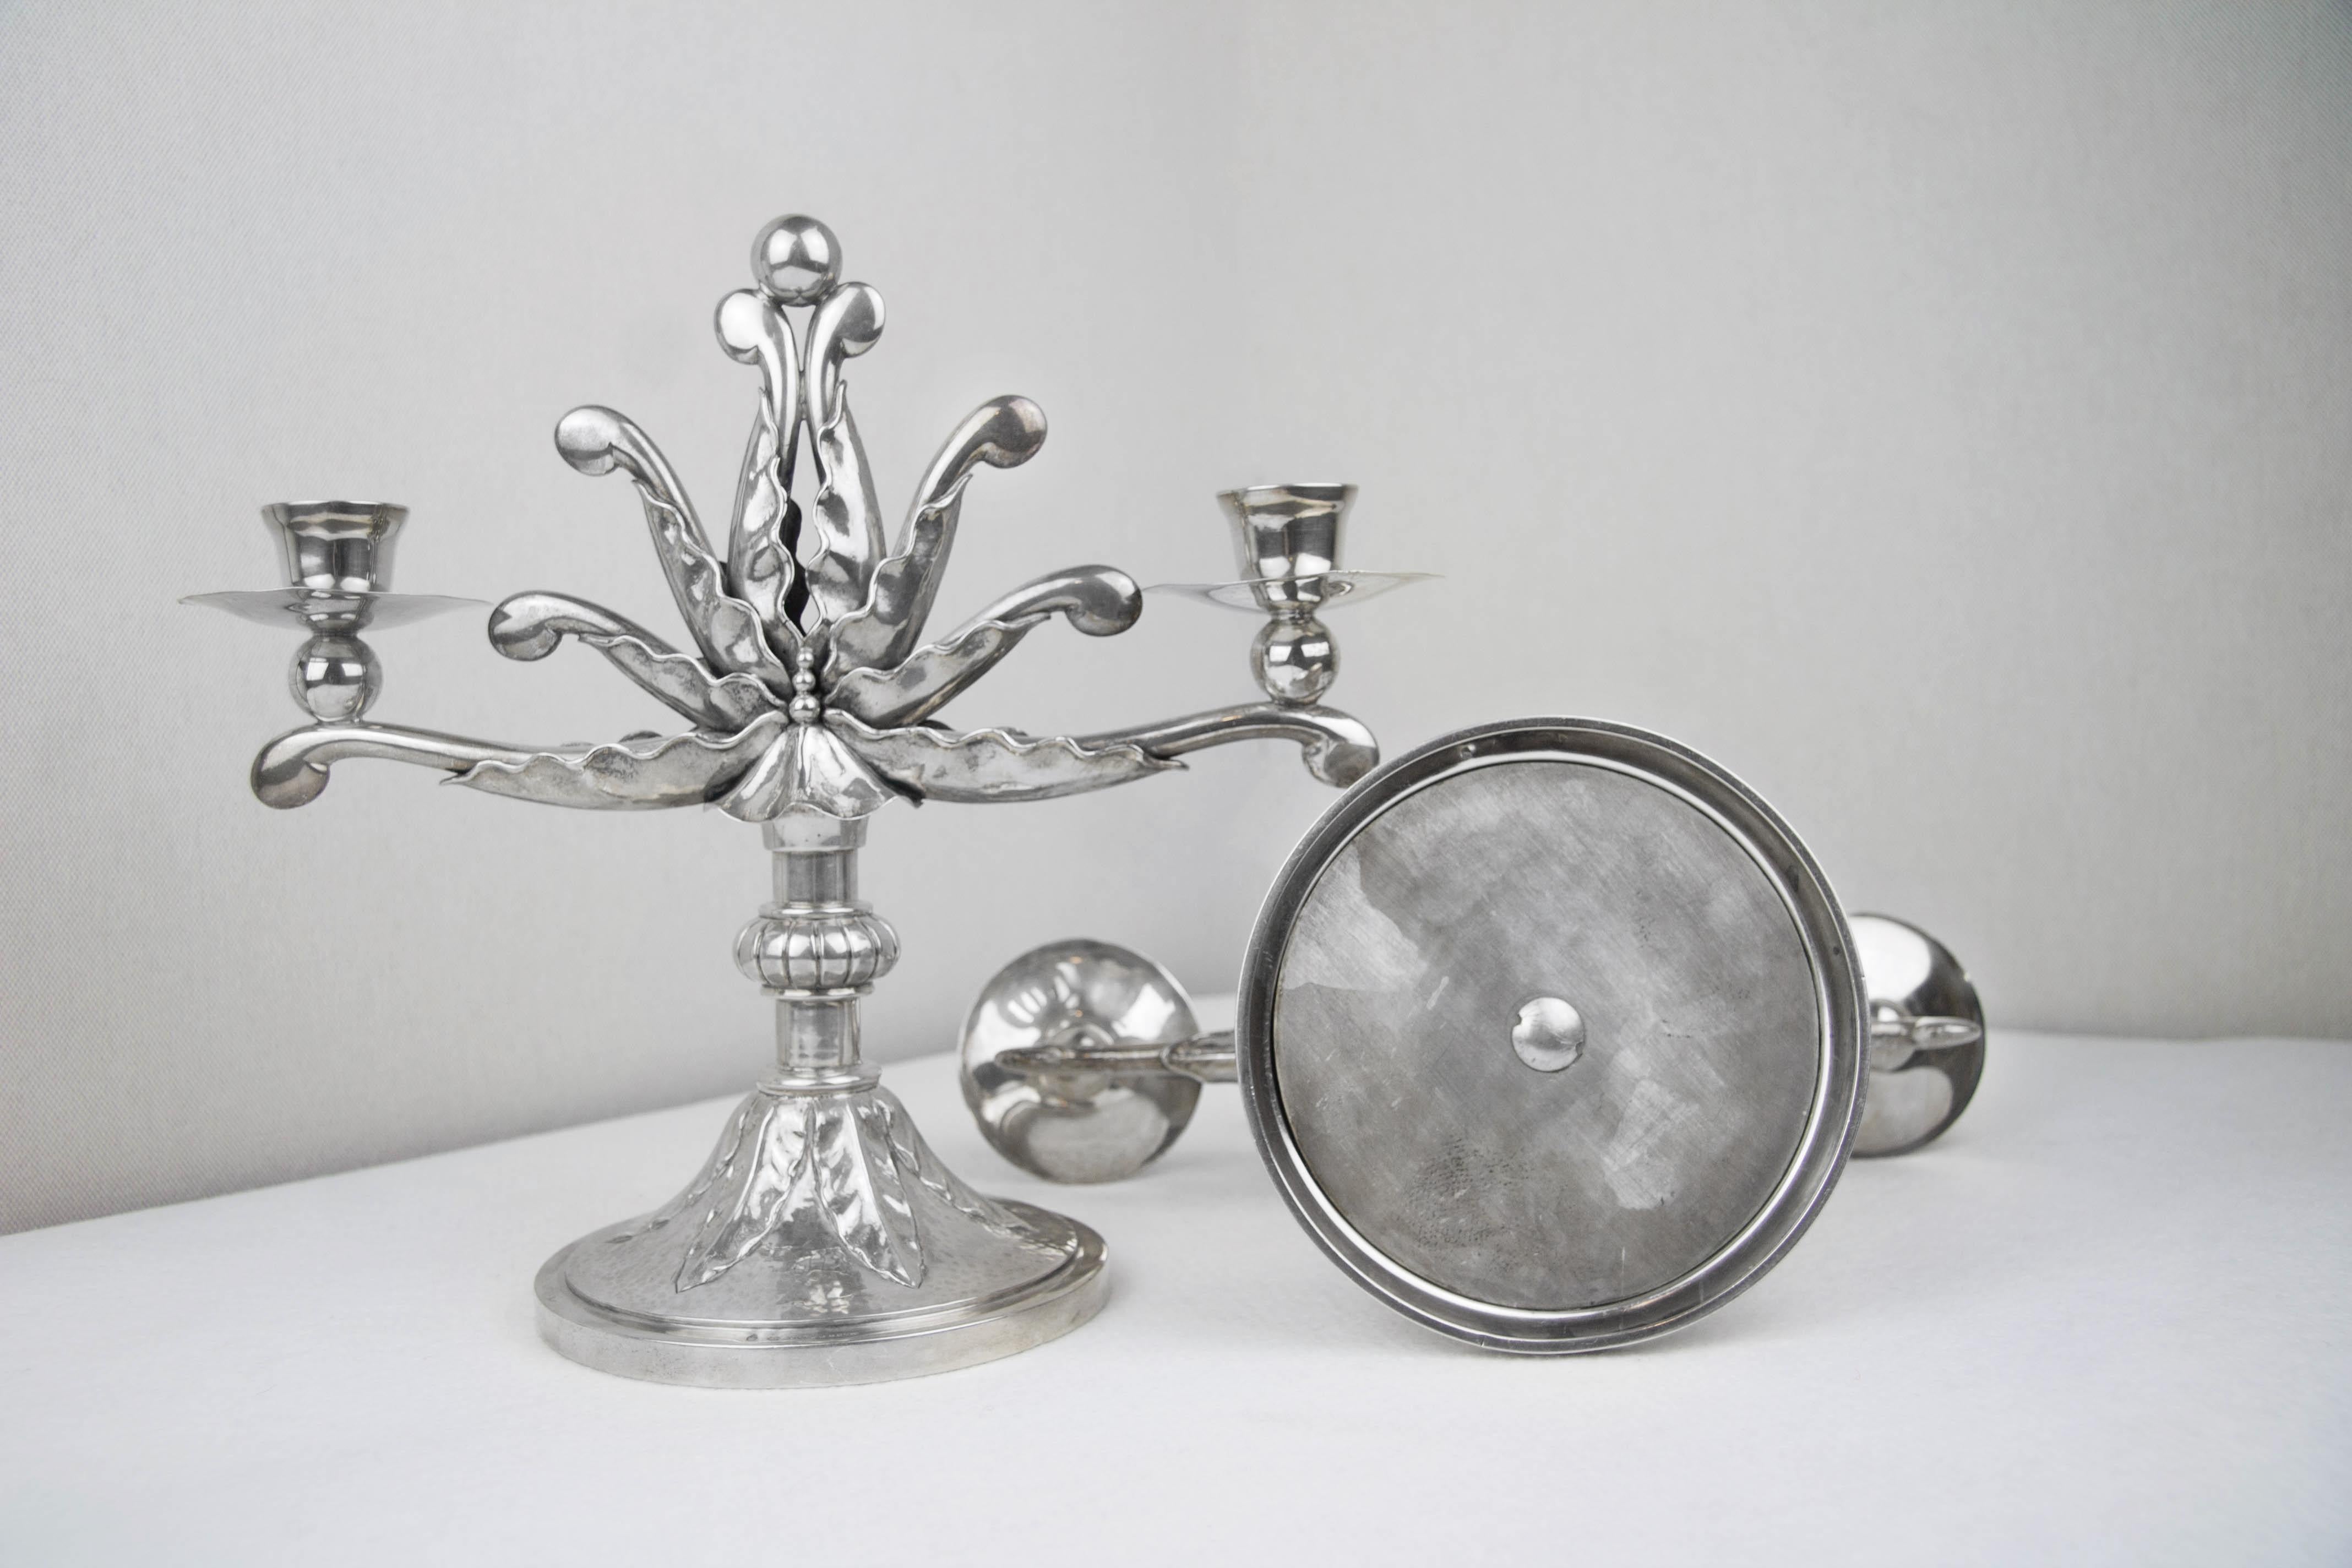 Paar schöne Kerzenhalter aus Sterlingsilber, mit der Marke von Silberwaren aus dem Anfang des 20. Jahrhunderts. Das Schmuckstück ist besonders elegant, die florale Inspiration, die sich im polylobolaten Stiel in der Art der Blütenblätter